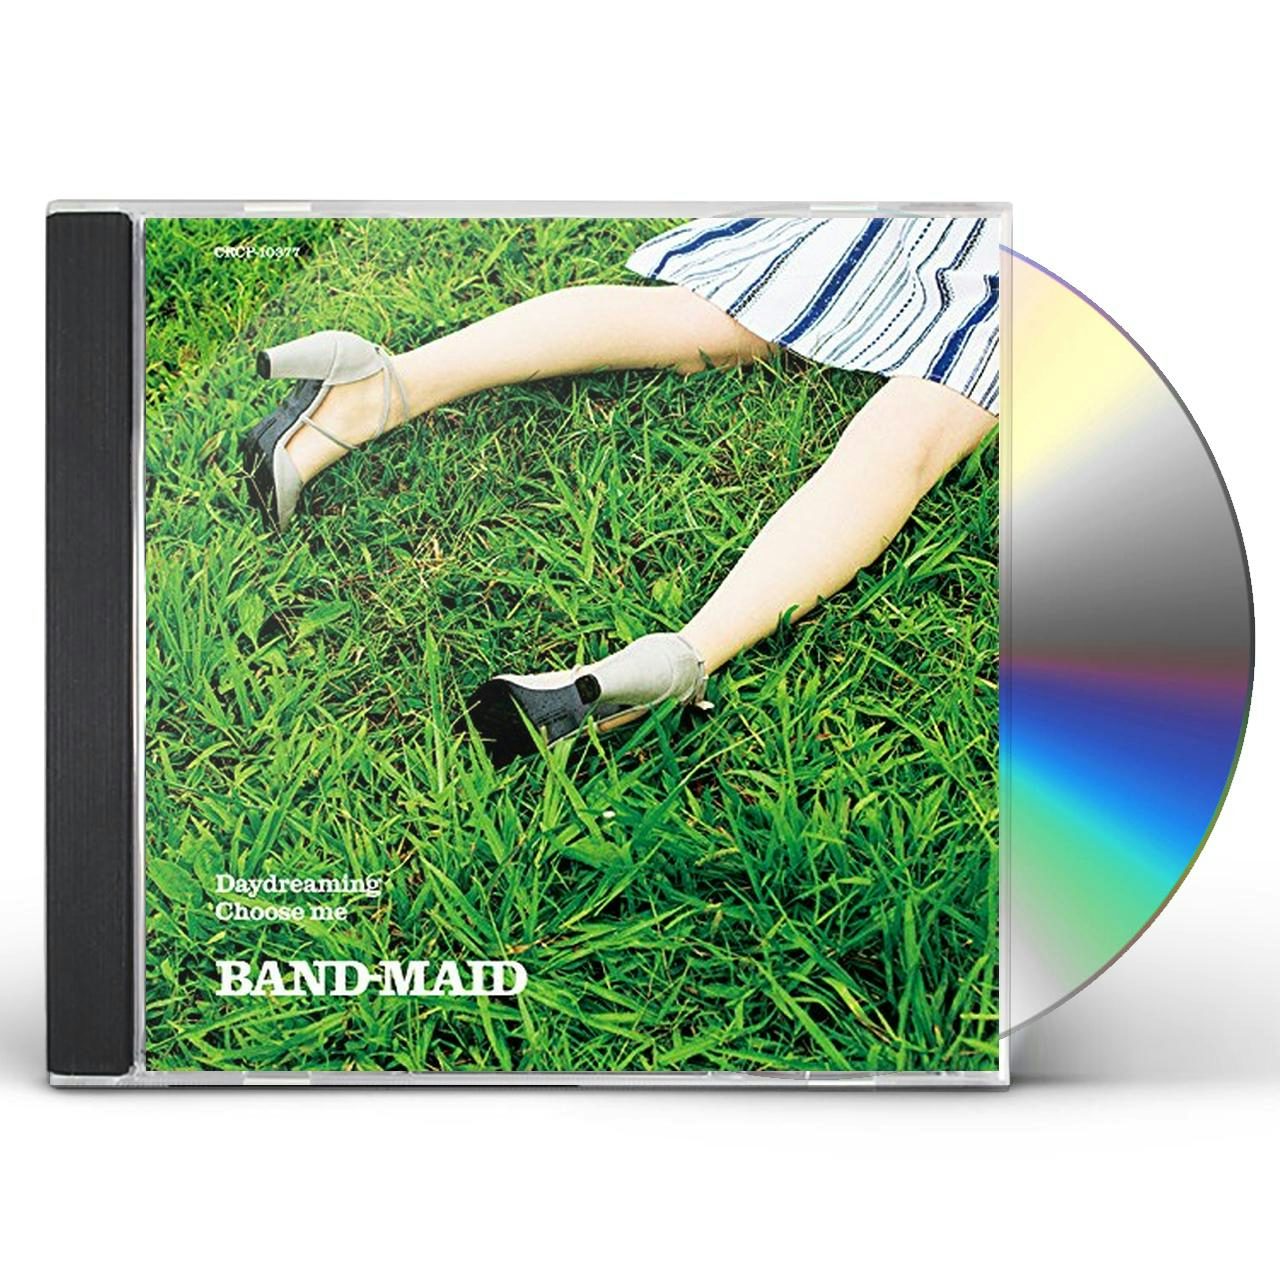 アウトレット価格で提供 BAND-MAID Daydreaming/Choose 初回生産限定盤 me 邦楽